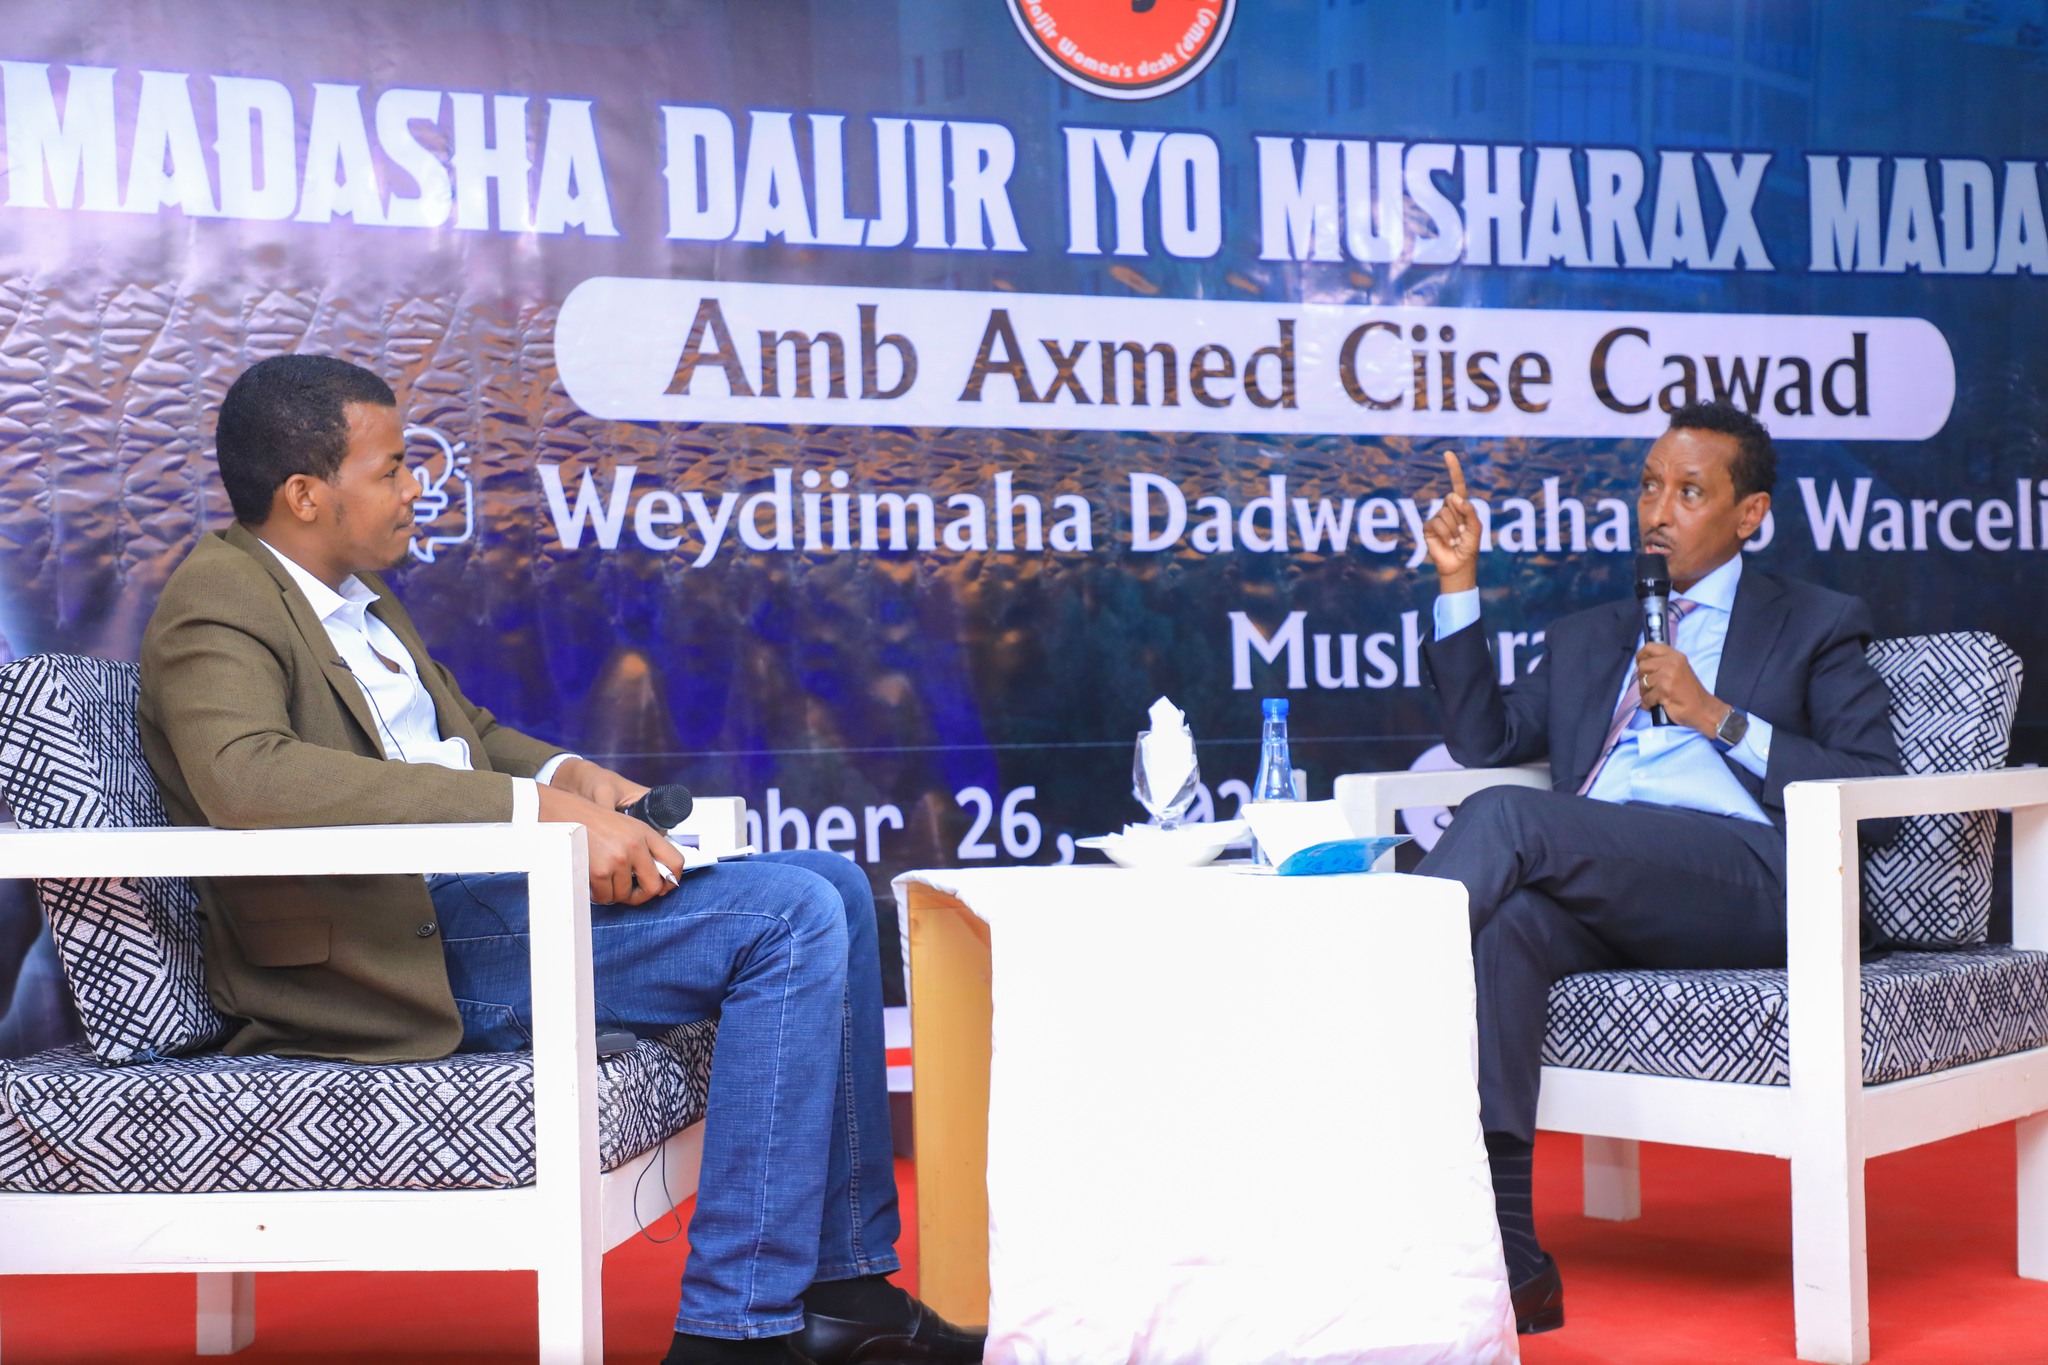 Full Video | Madasha Daljir & Musharax Axmed Ciise Cawad iyo su’aalaha dadweynaha!